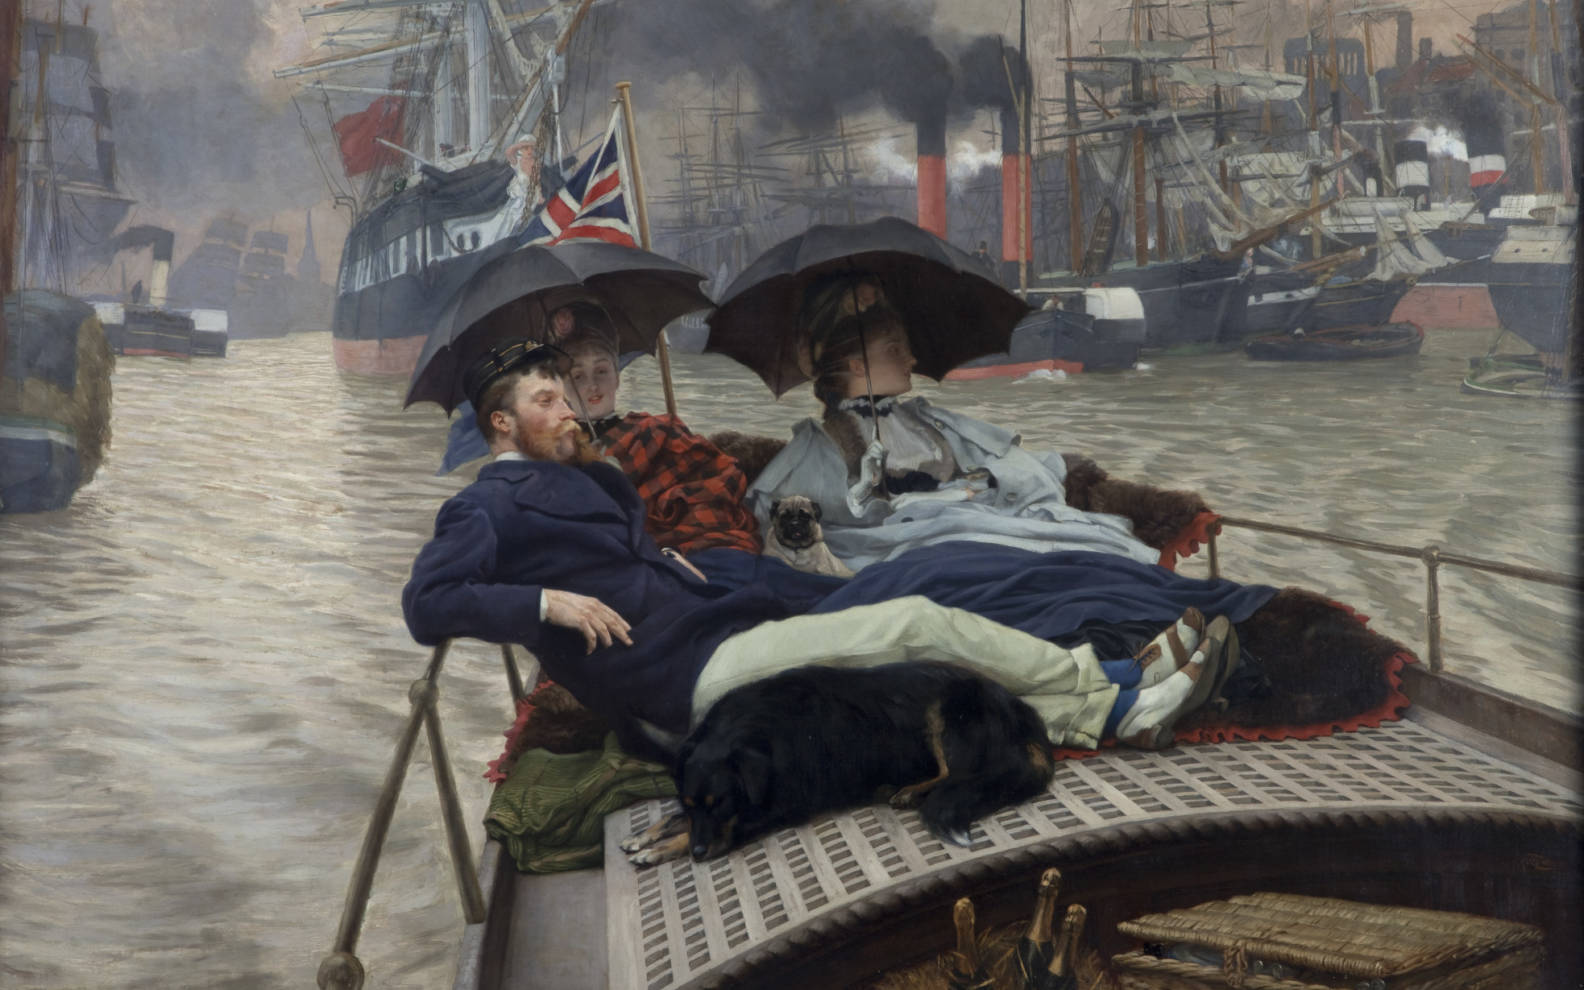 템스 강에서(어느 쪽이든 함께라면 얼마나 행복할까요?) by James Tissot - 1876 - 74.8 cm x 118 cm 